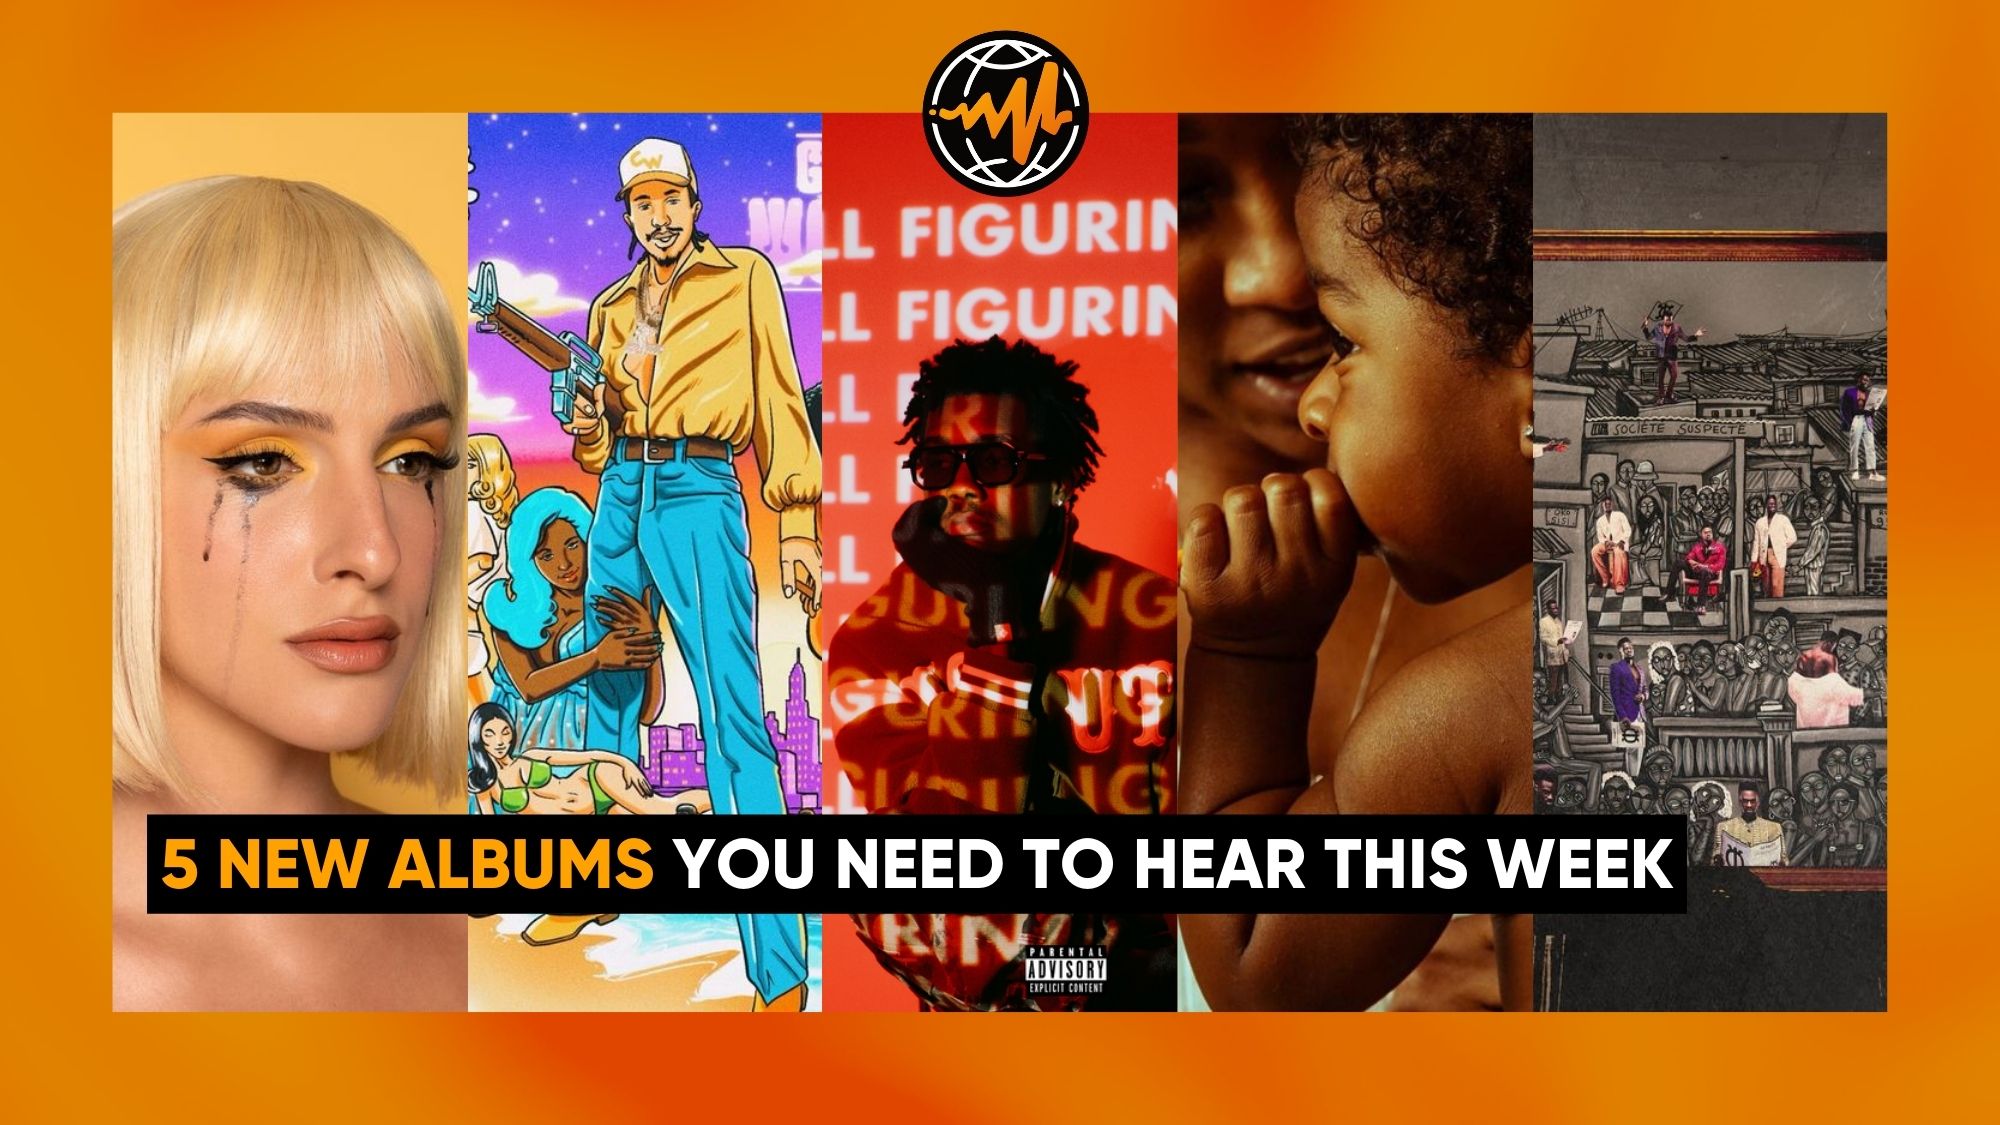 Lista: os melhores álbuns de rap lançados em 2019